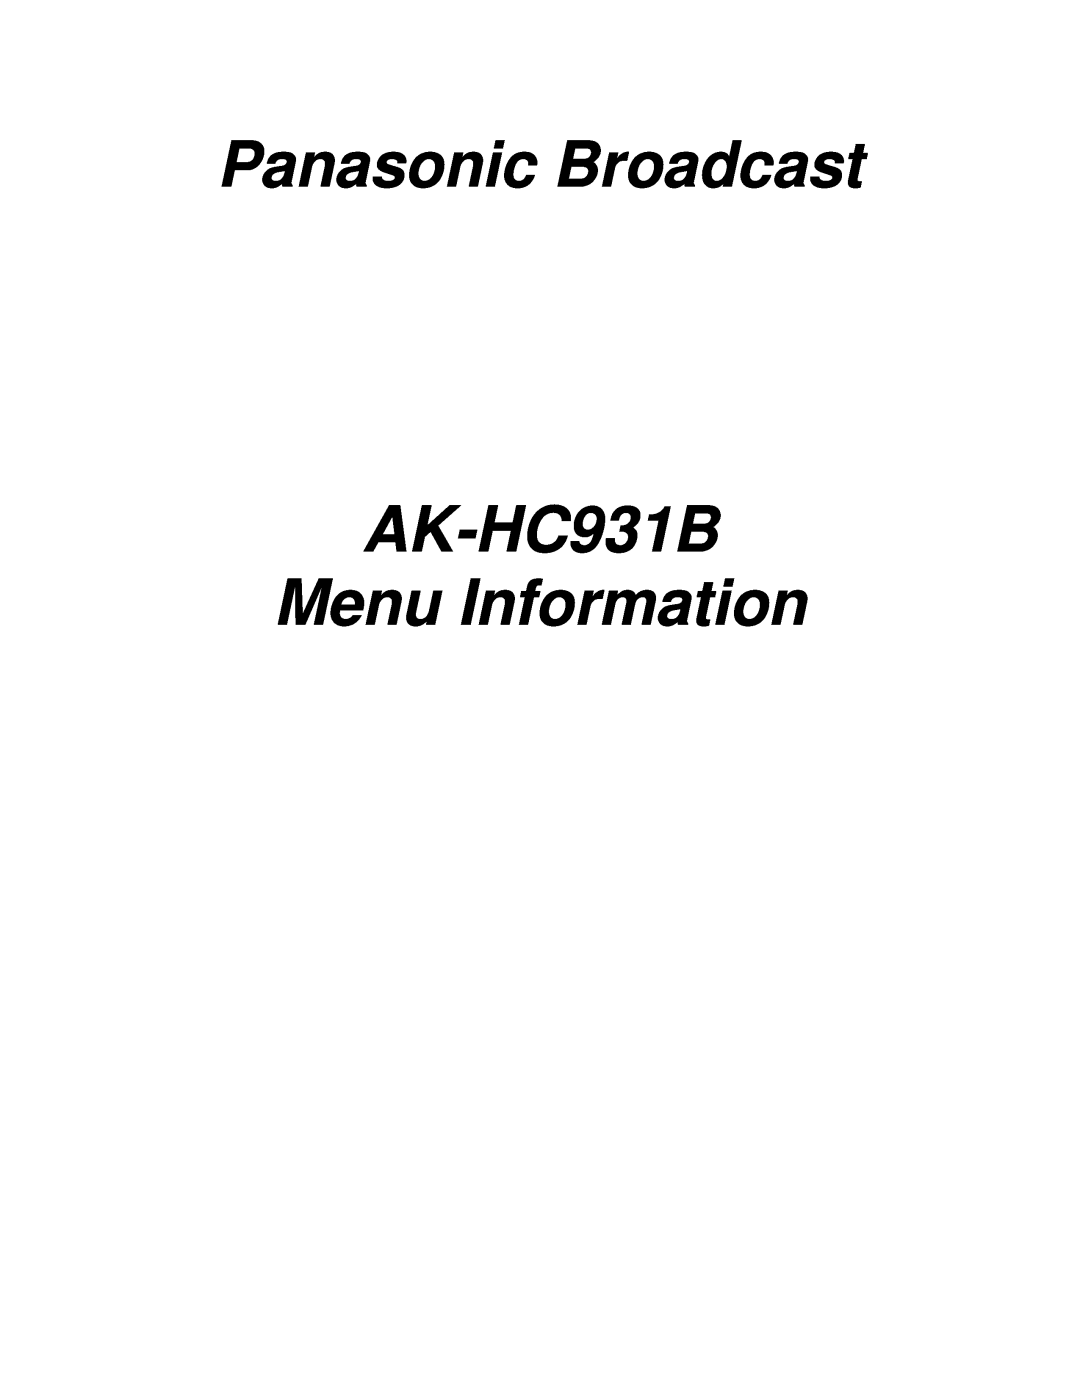 Panasonic manual Panasonic Broadcast, AK-HC931B Menu Information 